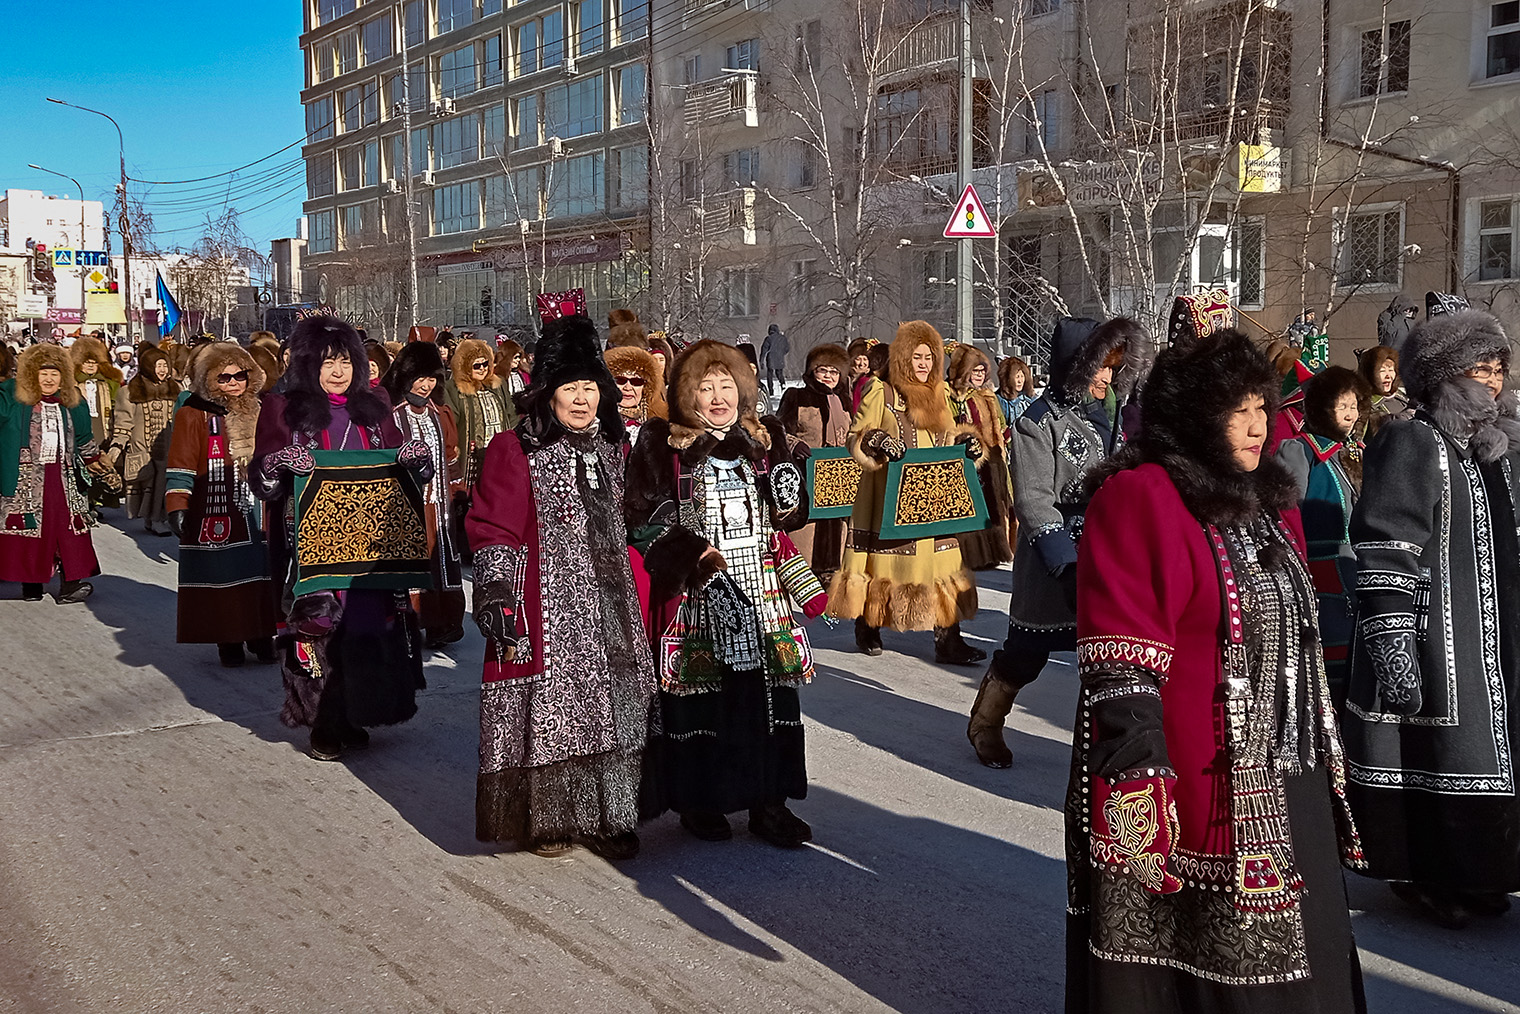 Шествие в честь Дня народного мастера проходит от Дома дружбы народов до площади Орджоникидзе и заканчивается массовым осуохаем